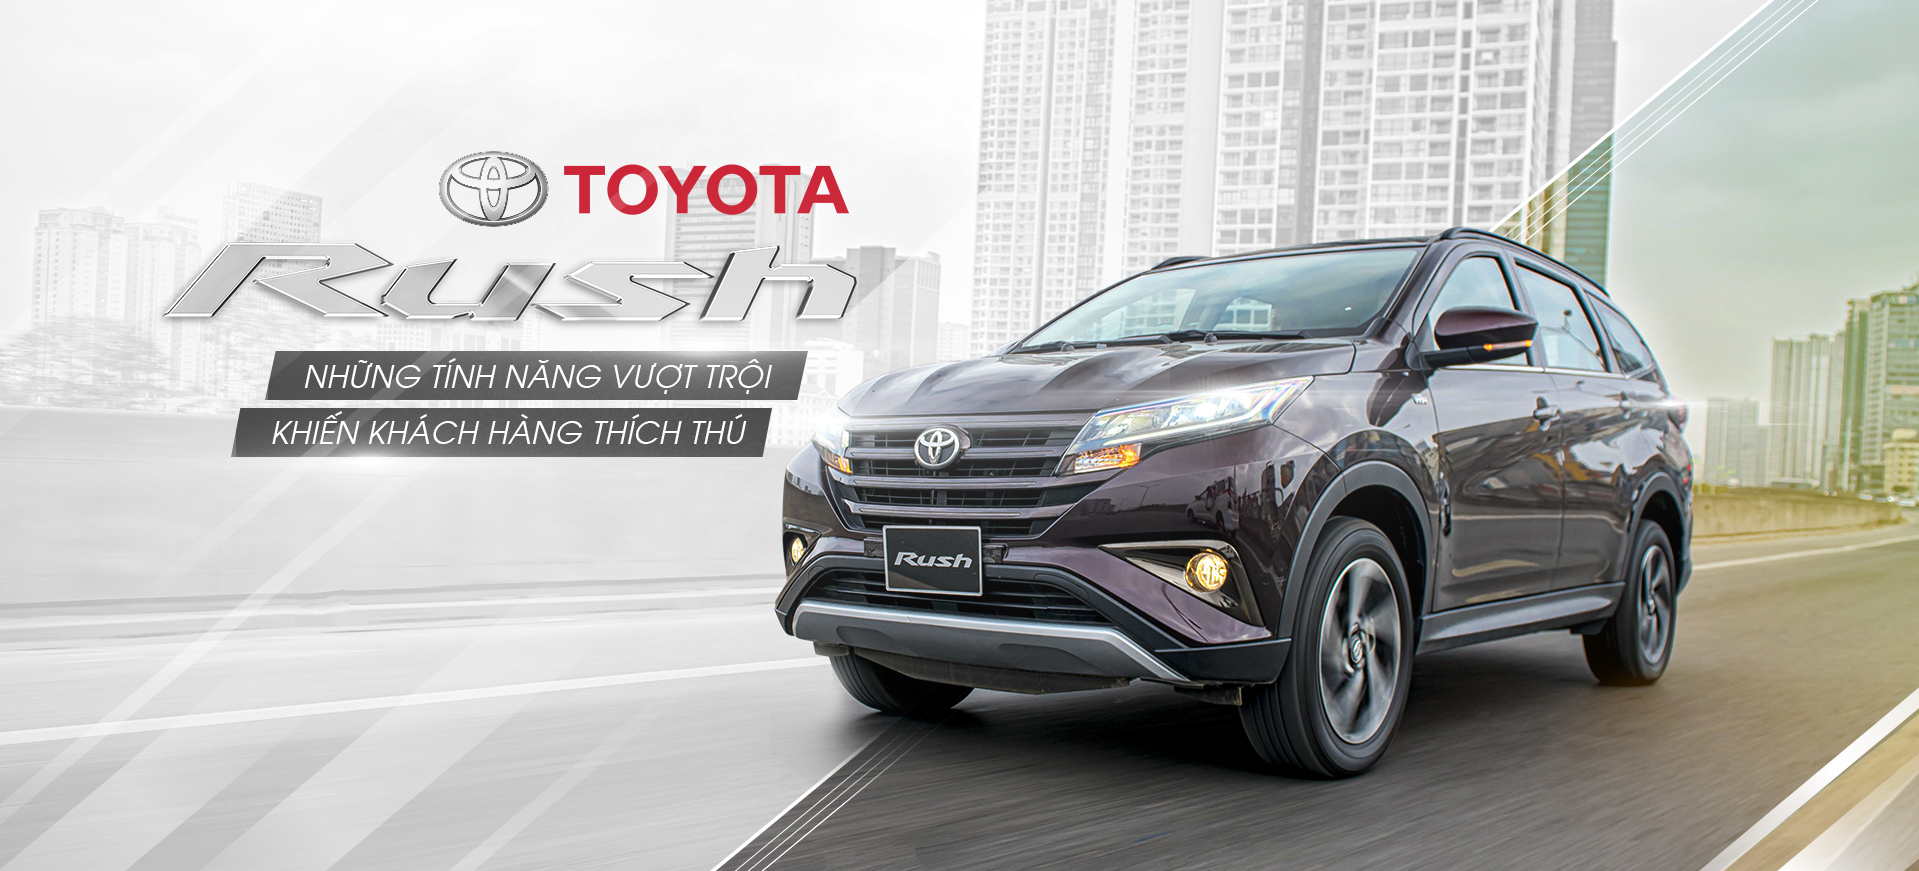 700 Đồng cho 1km, 10.000 đồng cho 1 ngày cầm lái, Đó chính là Toyota Rush 2020